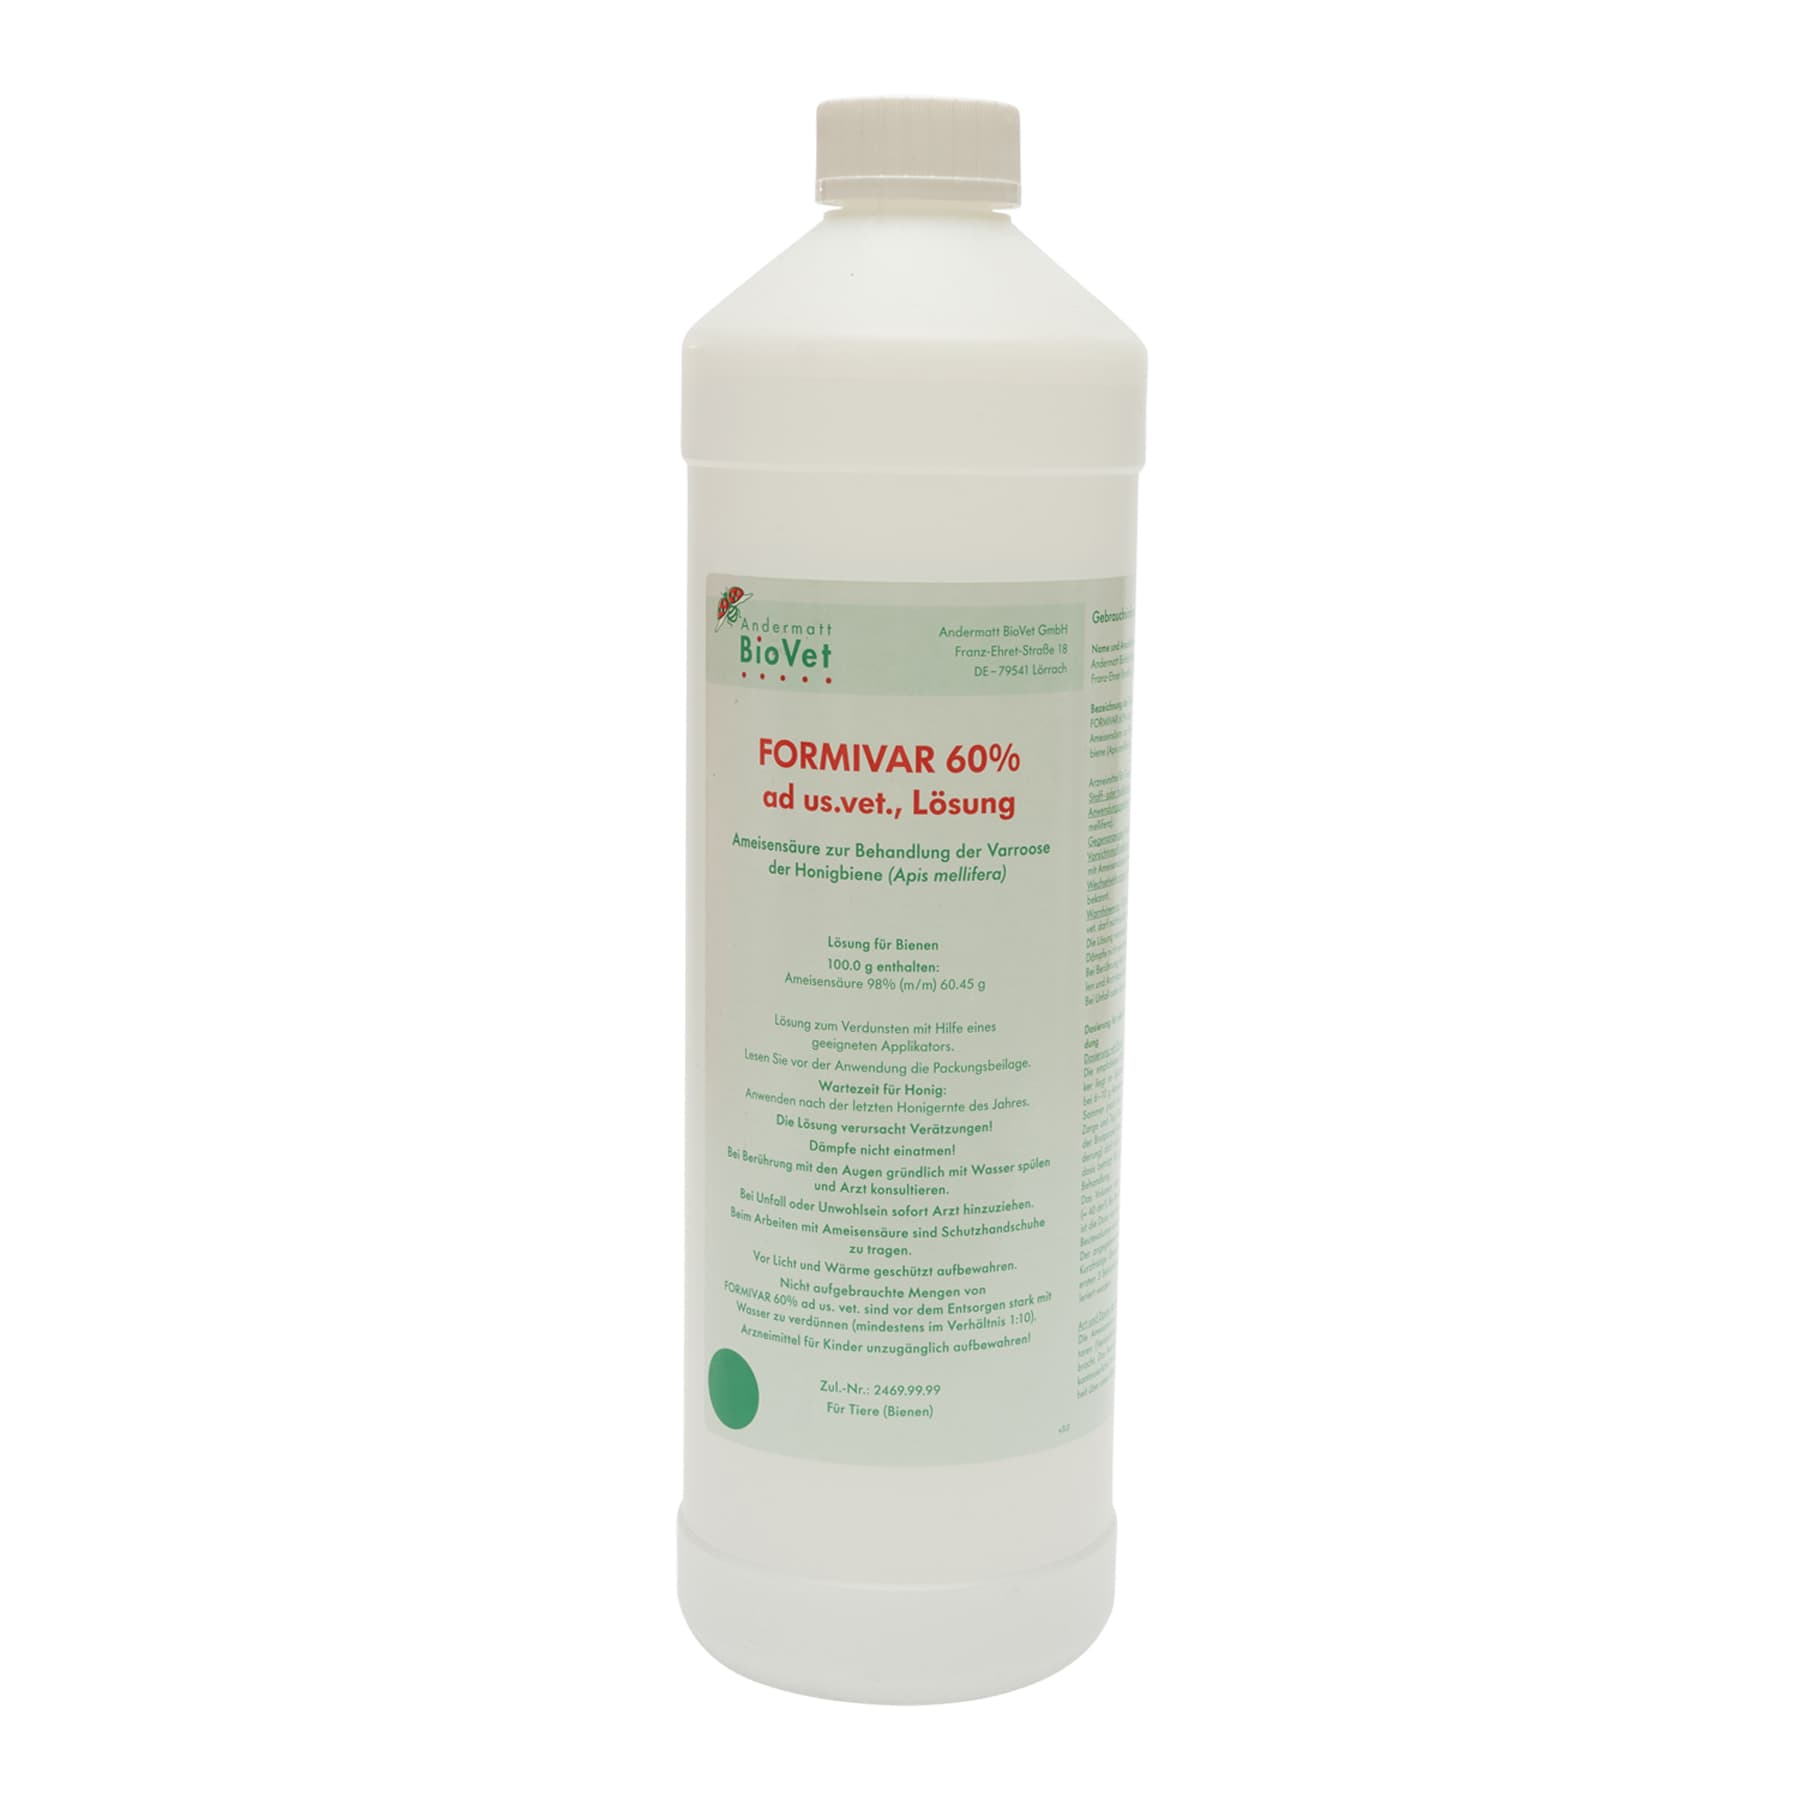 Ameisensäure 60 %  ad us. vet. Liter, Formivar Kunststoffflasche, (Hersteller Andermatt BioVet GmbH) wegen Gefahrgut nur zur Selbstabholung